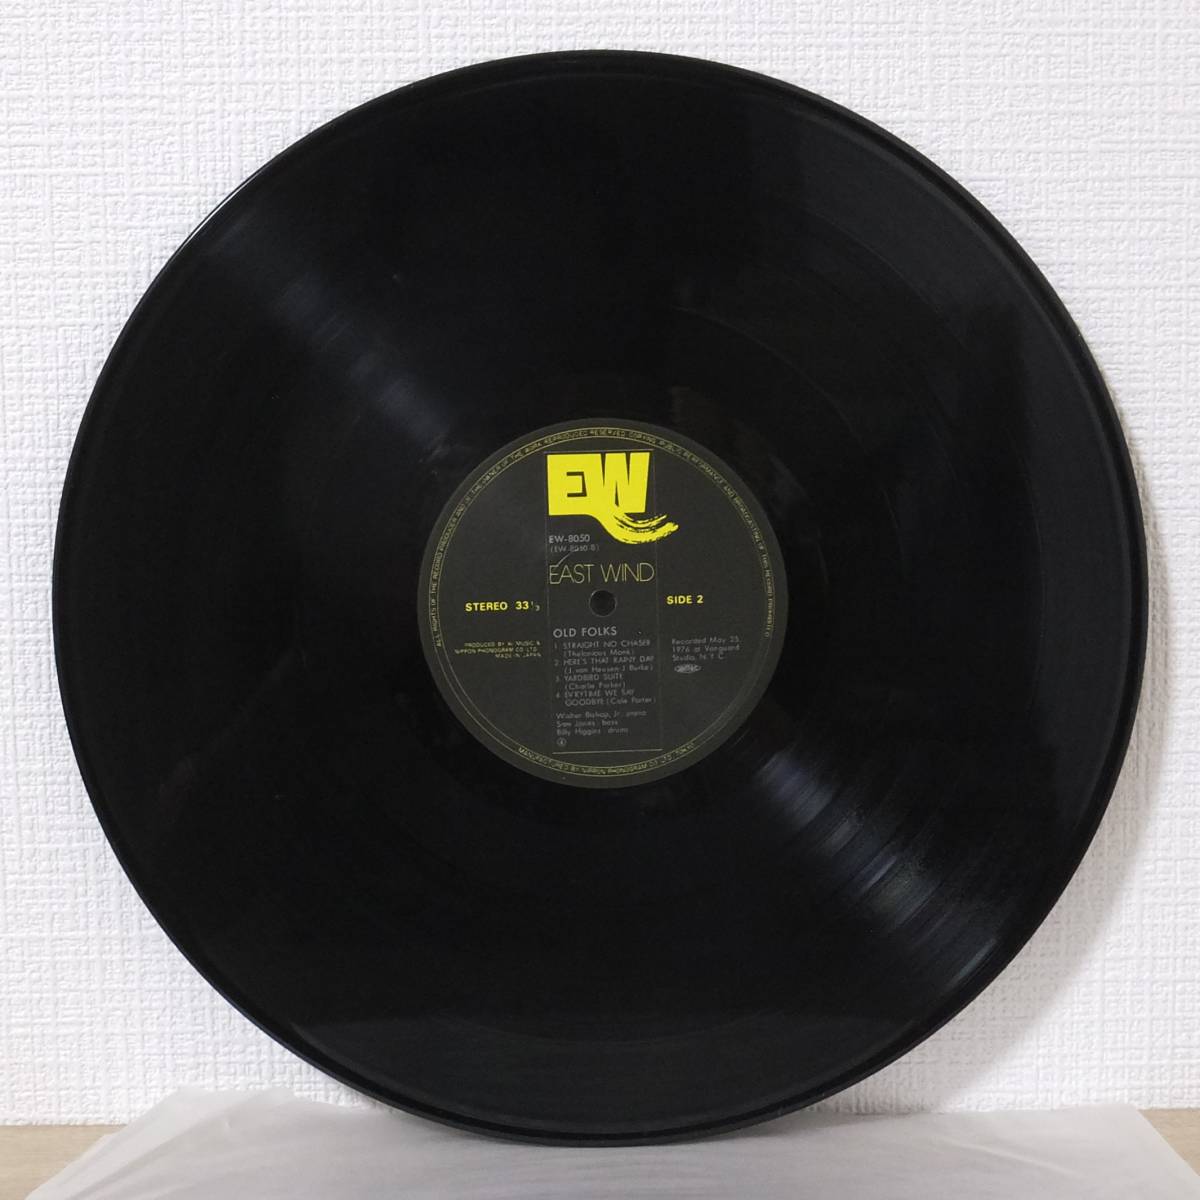 美品 帯付き LPレコード OLD FOLKS オールド・フォークス ウォルター・ビショップ Jr. EW-8050 EAST WIND